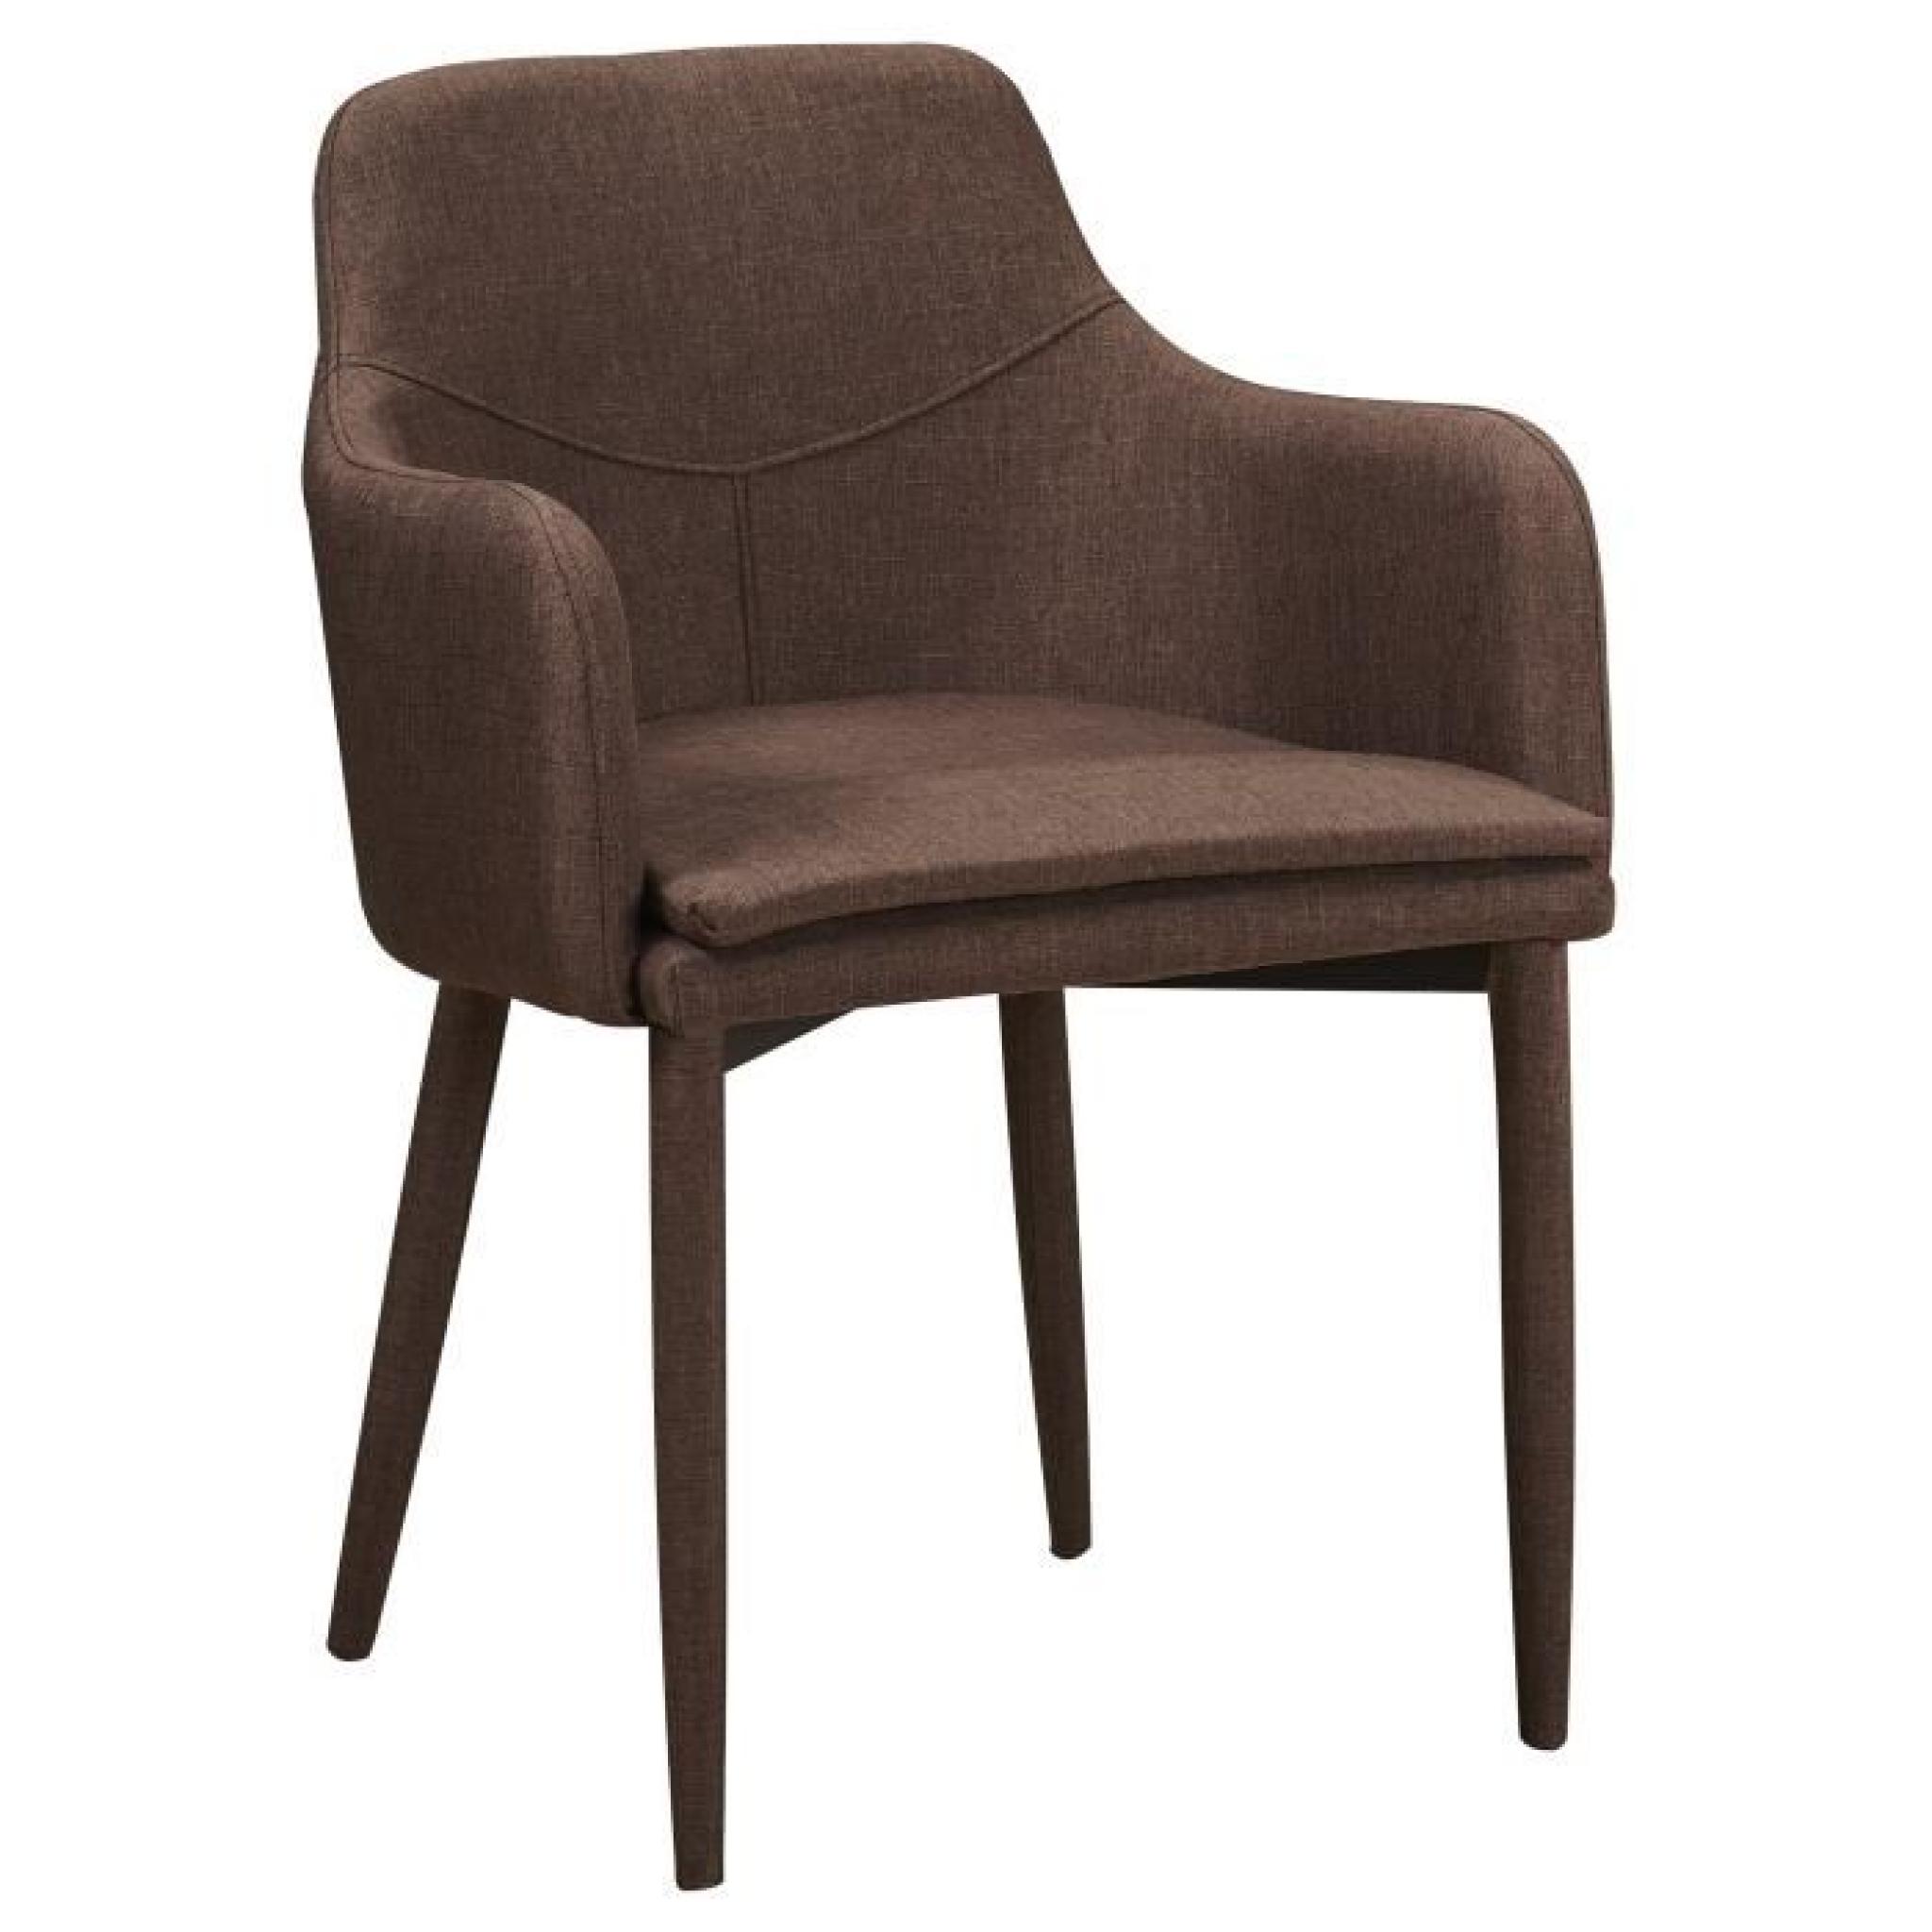 Chaise en tissus design avec accoudoirs coloris chocolat